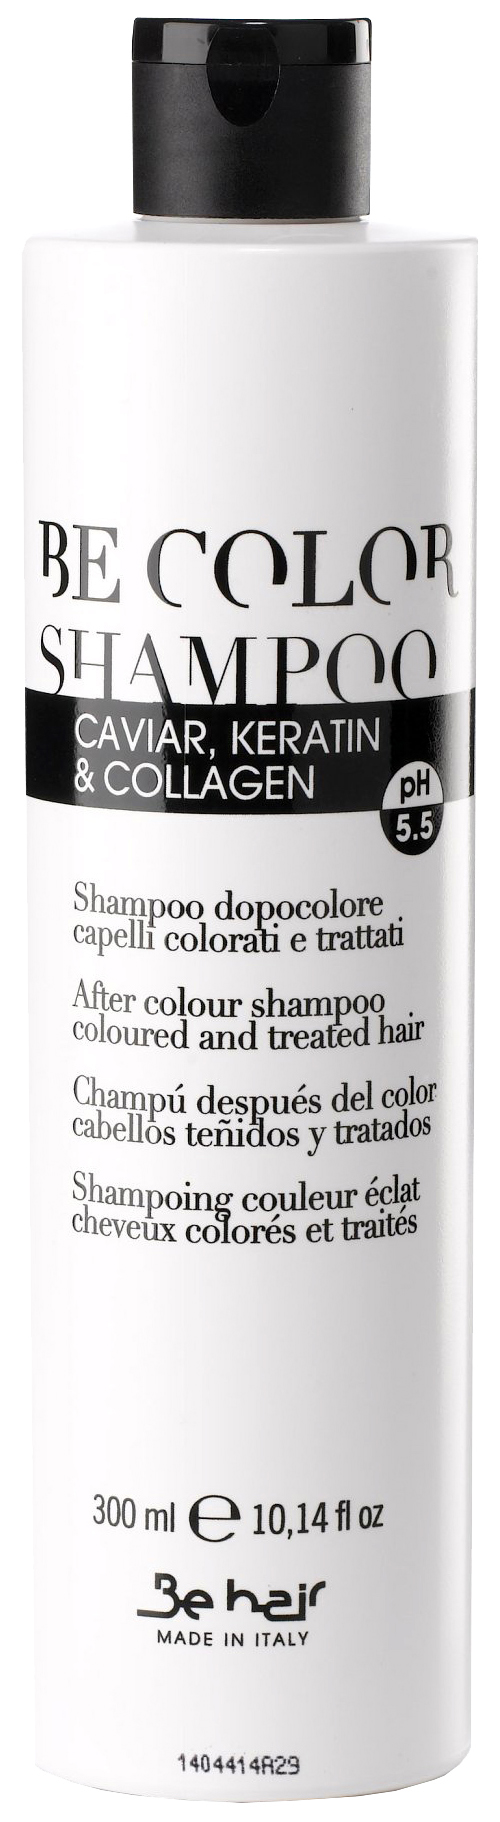 Шампунь Be Hair Be Color Shampoo 300 мл